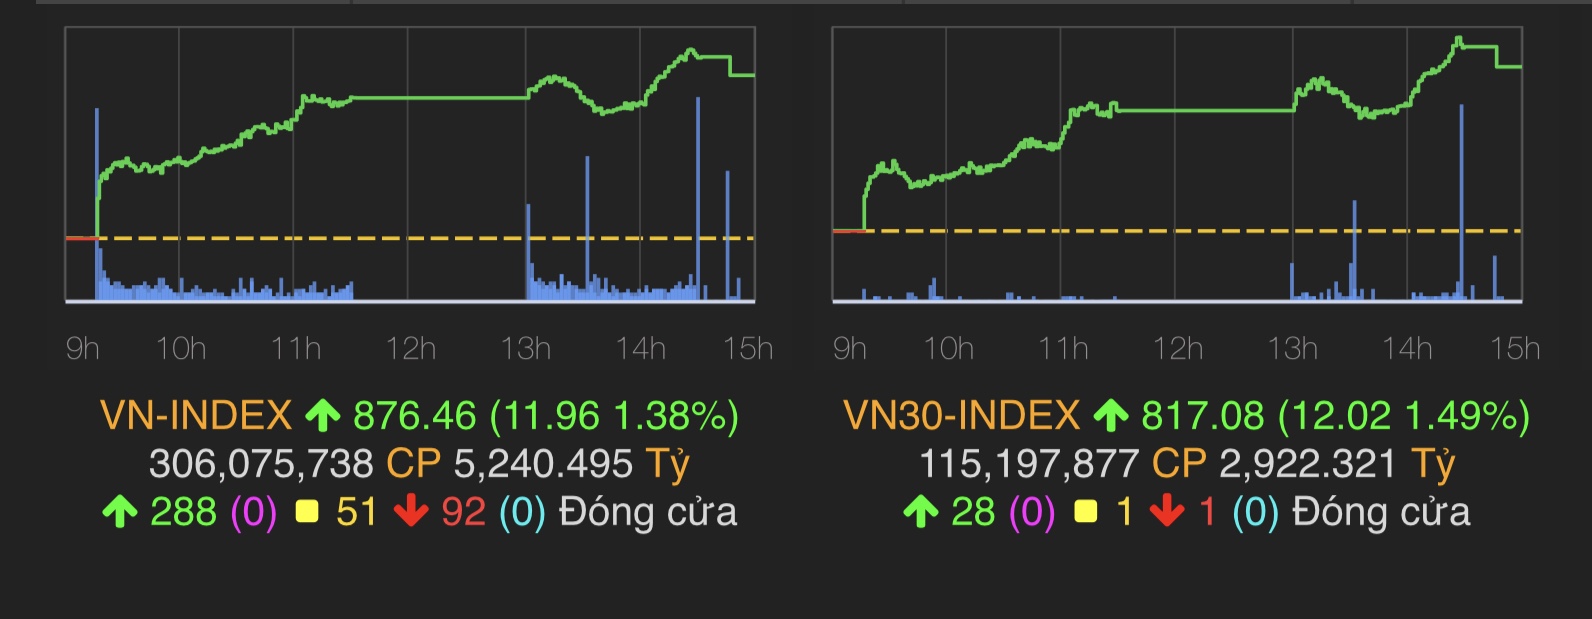 VN-Index tăng 11,96 điểm (1,38%) lên mốc 876,46 điểm.